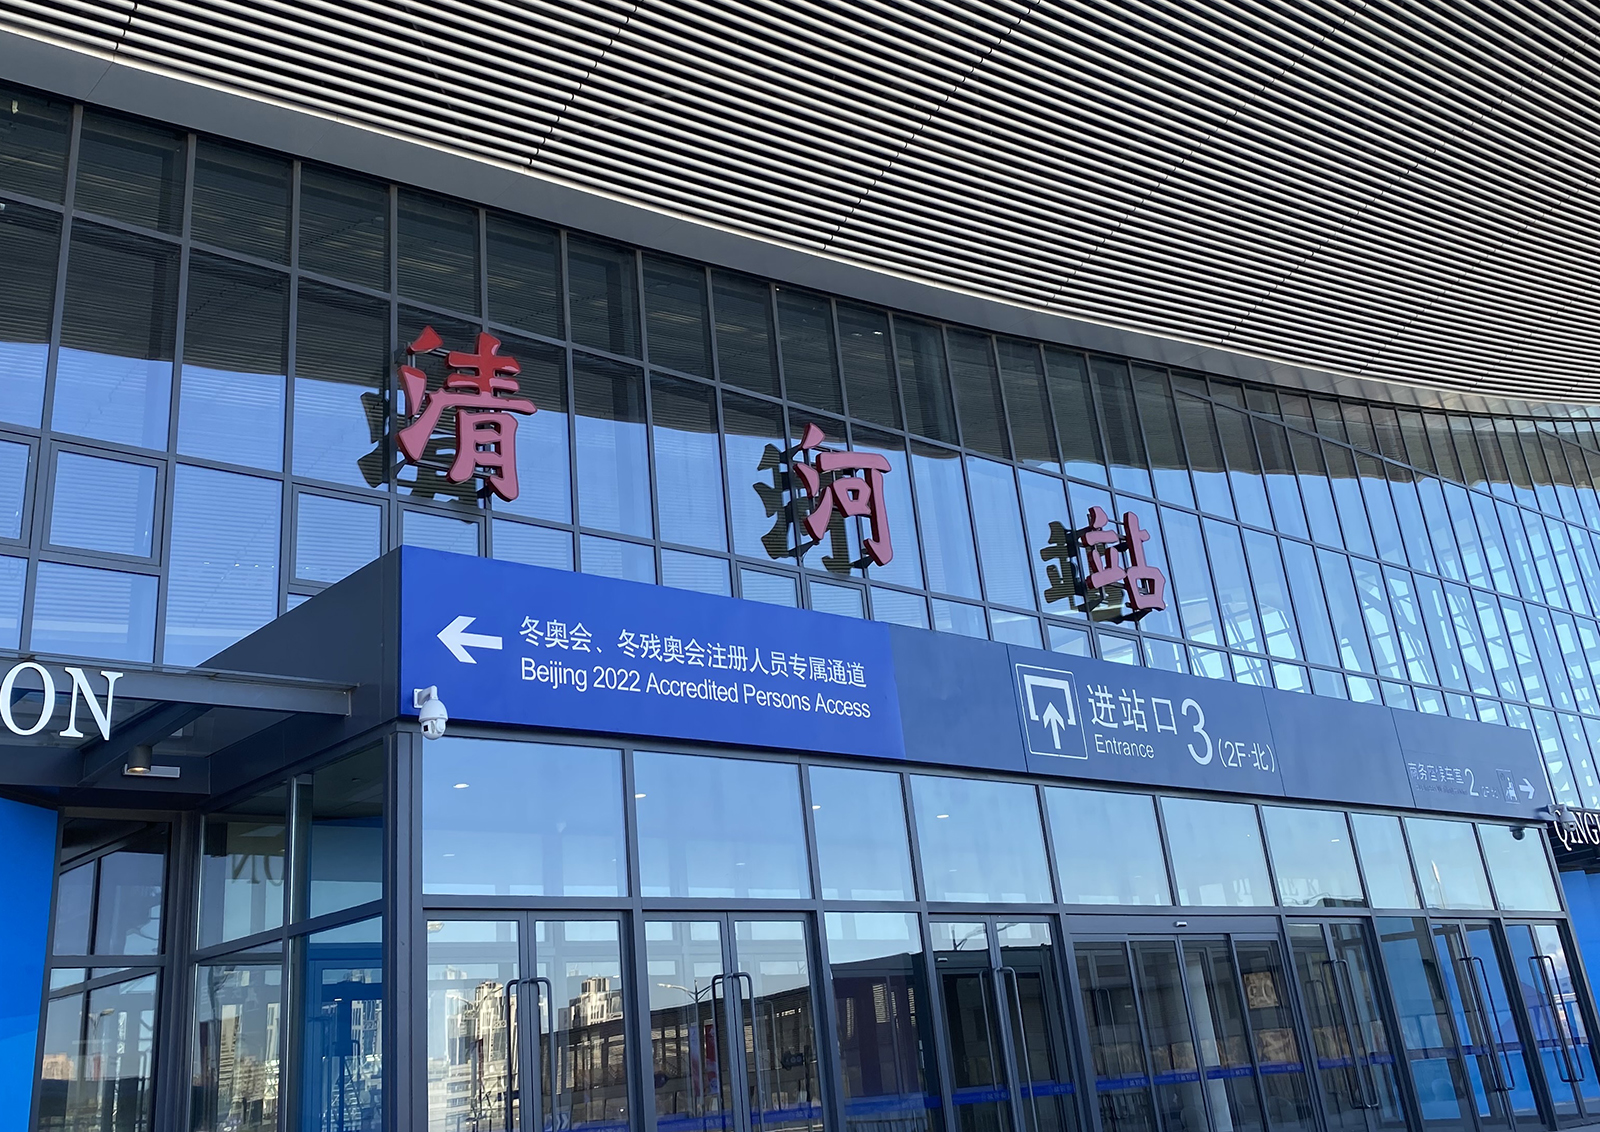 Beijing Qinghe Station.